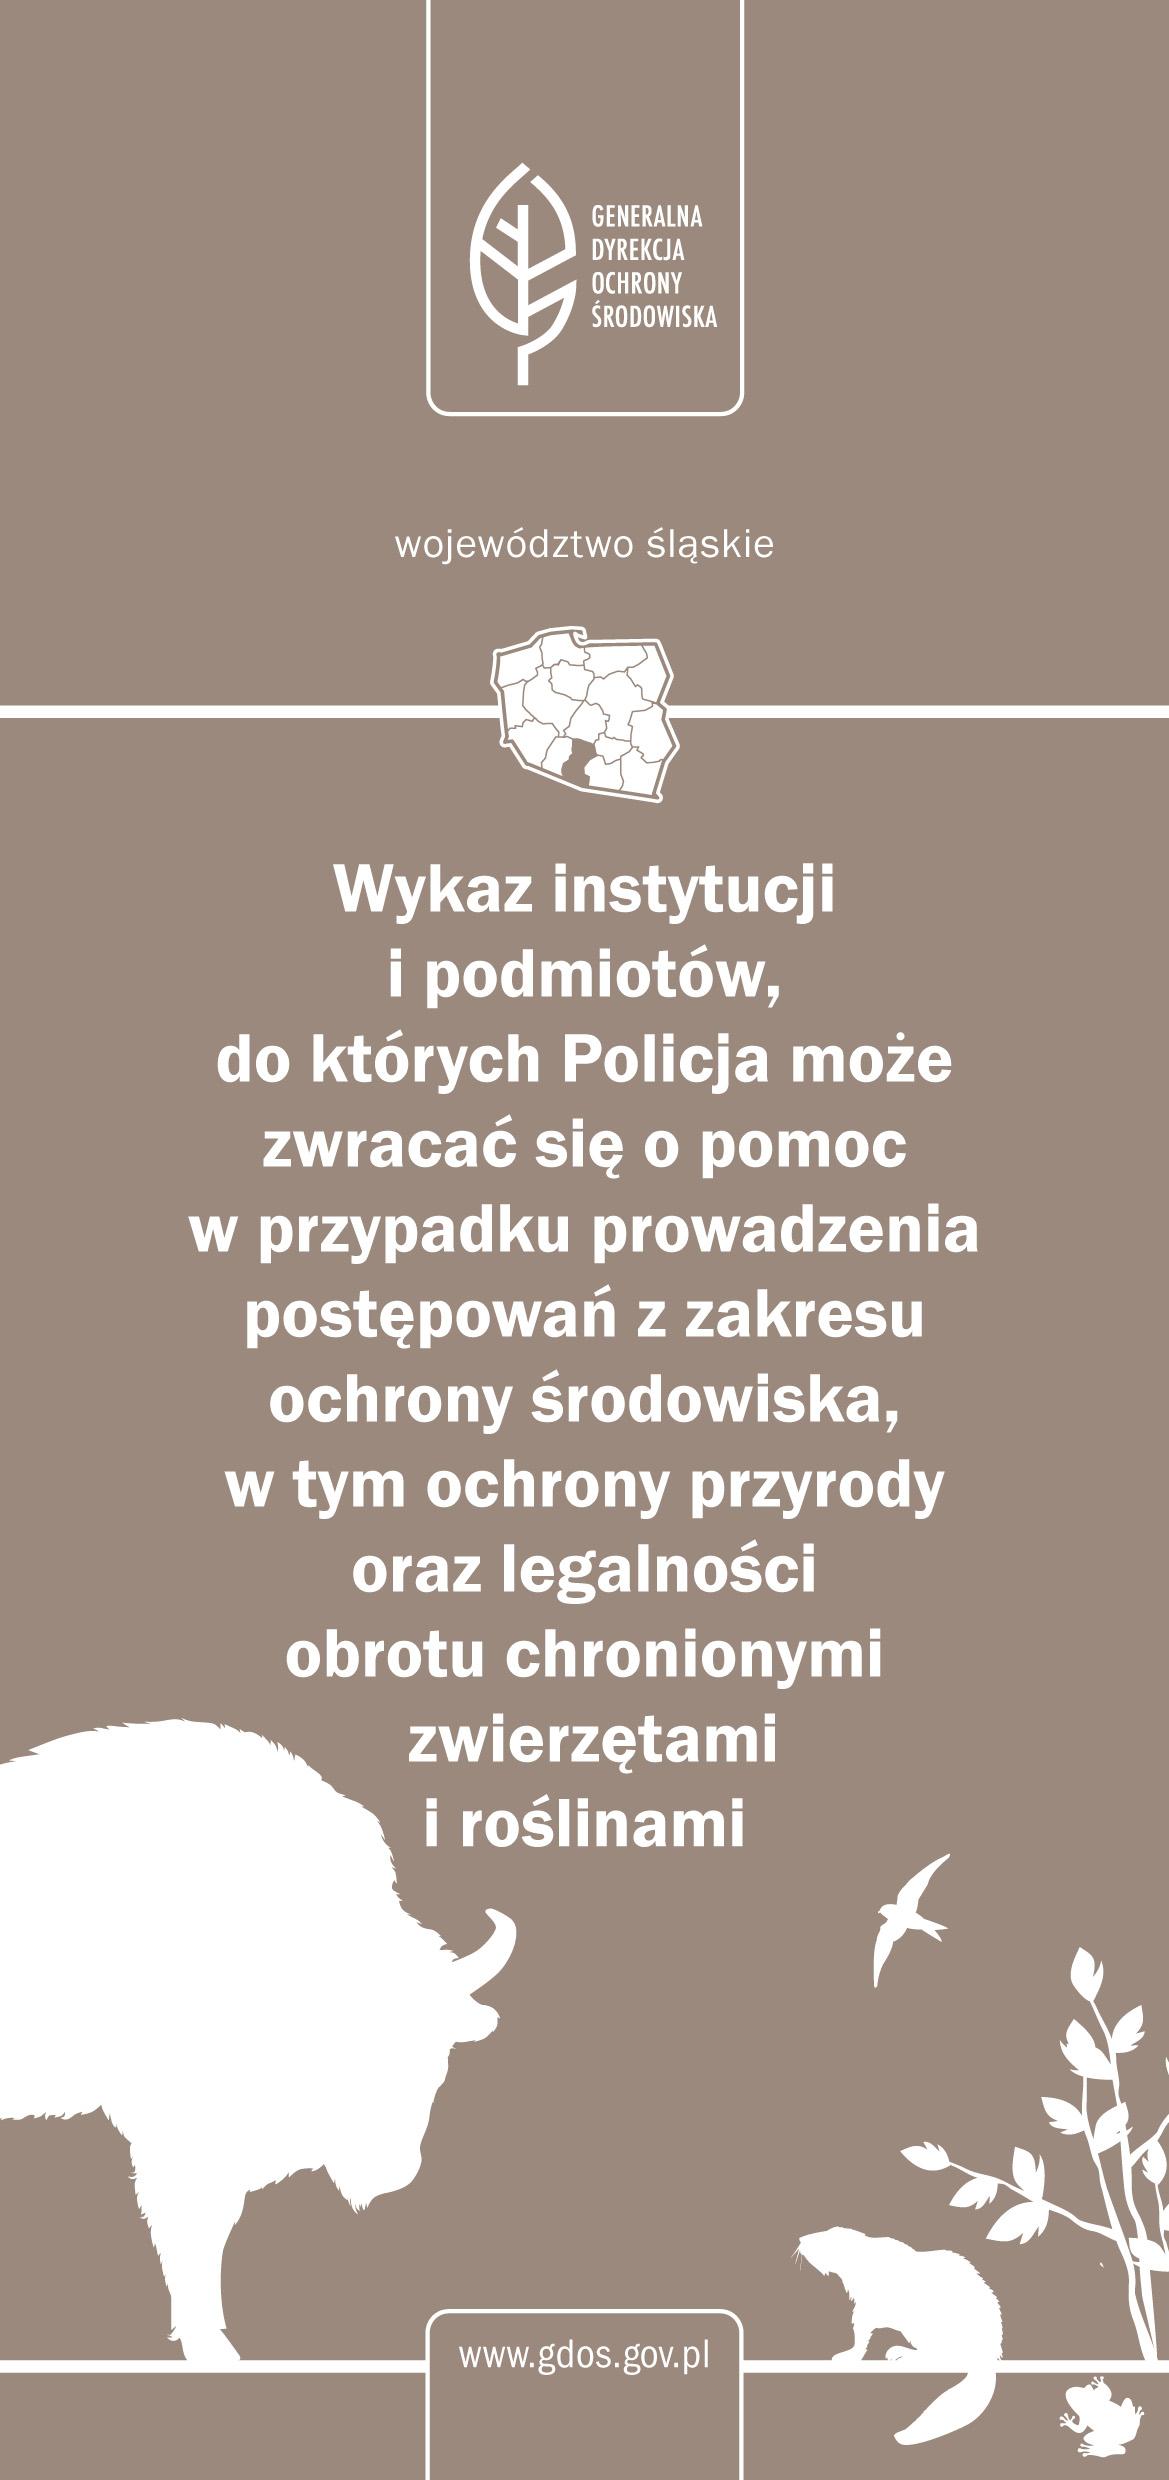 Województwo śląskie